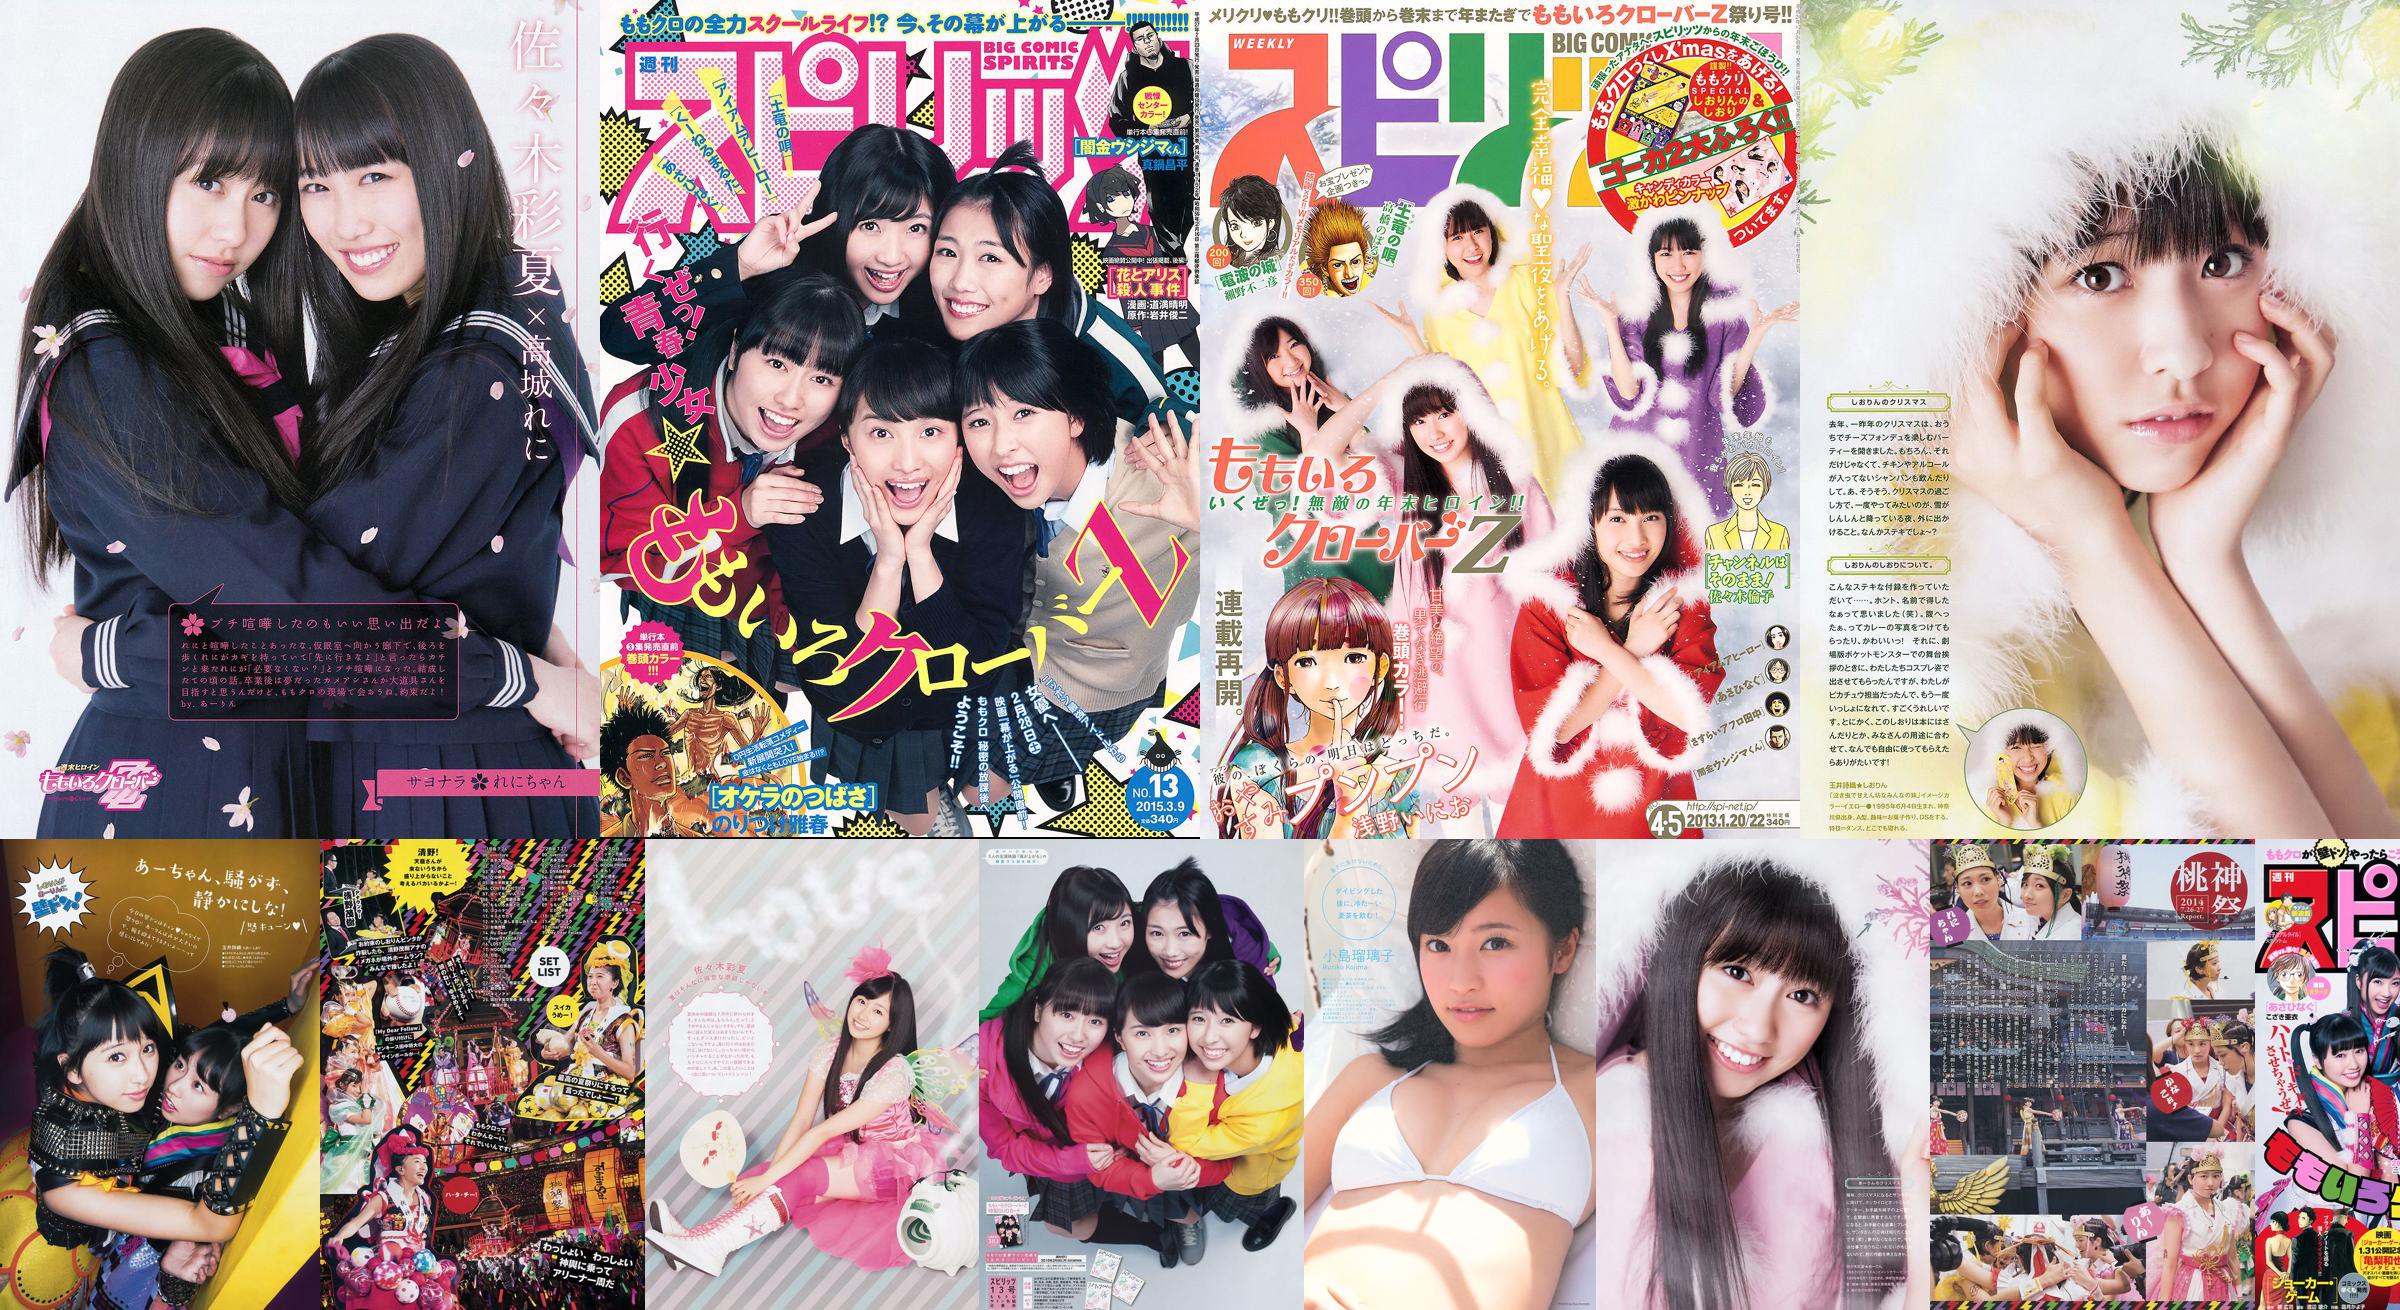 [Weekly Big Comic Spirits] も も い ろ ク ロ ー バ ー Z 2013 No.04-05 Photo Magazine No.7b9101 Trang 1